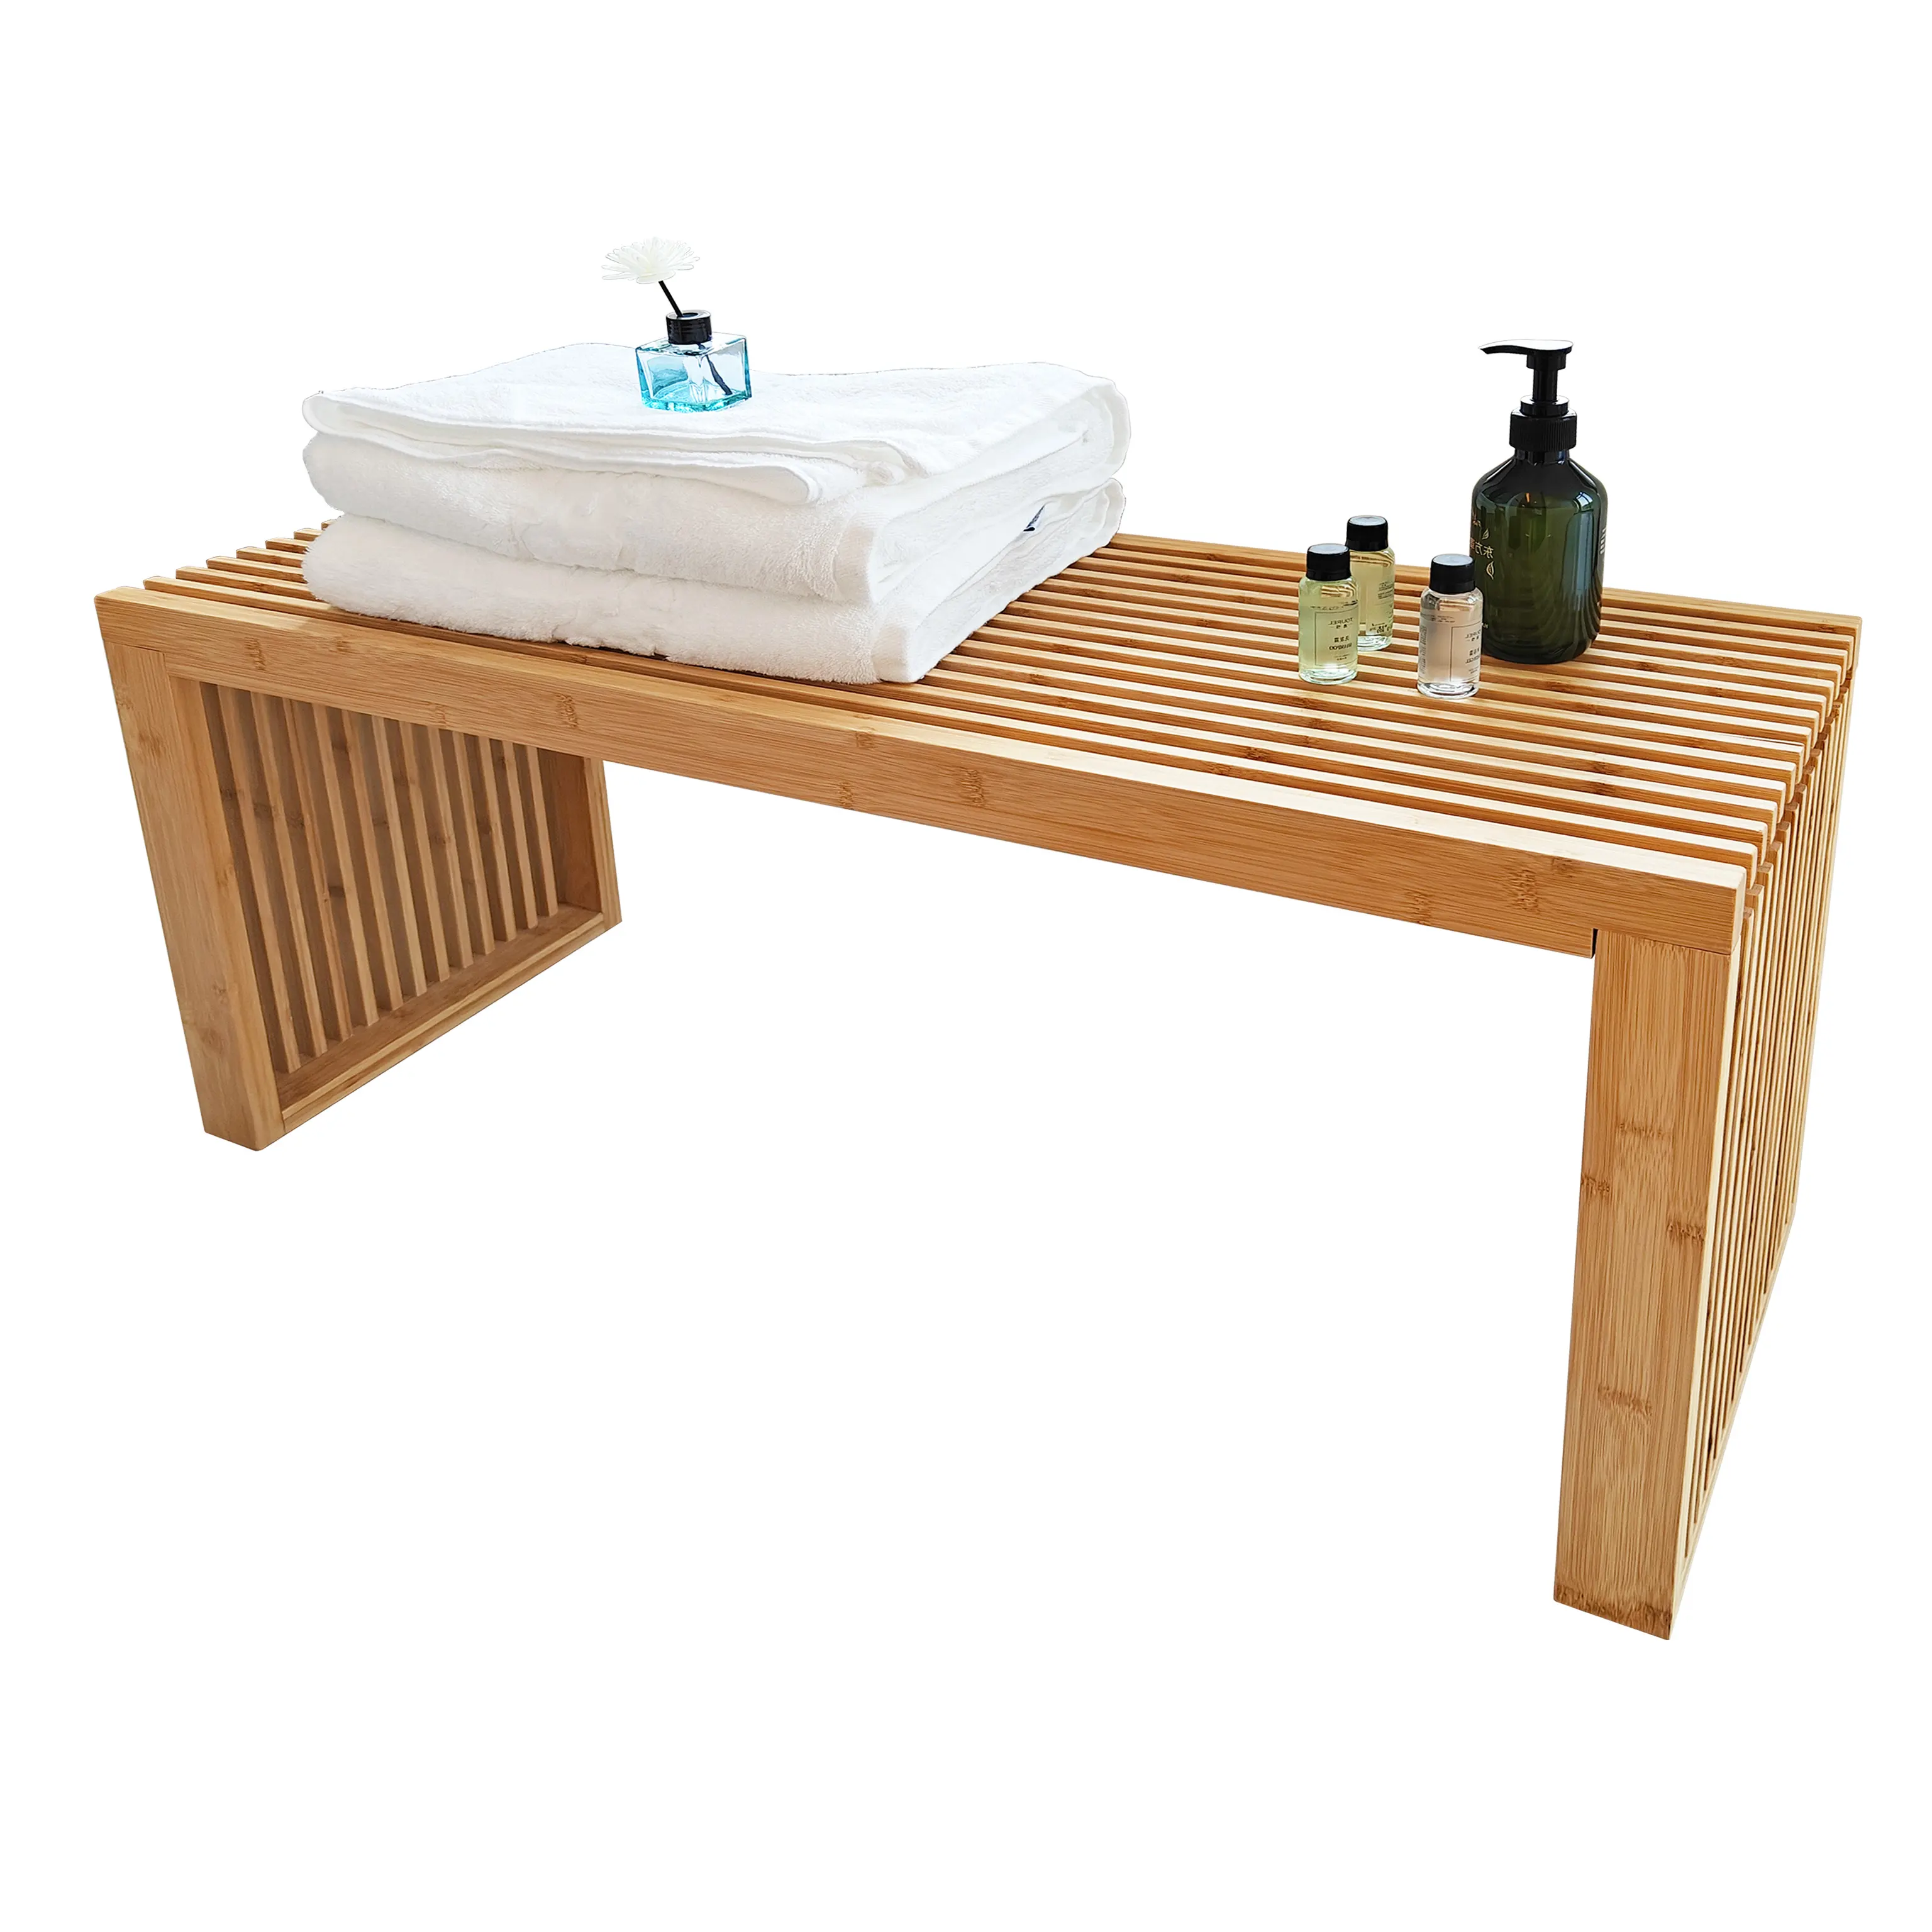 Bambou teck solide surface banc de douche accessoires de salle de bain banc de douche chaise bois siège de douche tabouret de bain